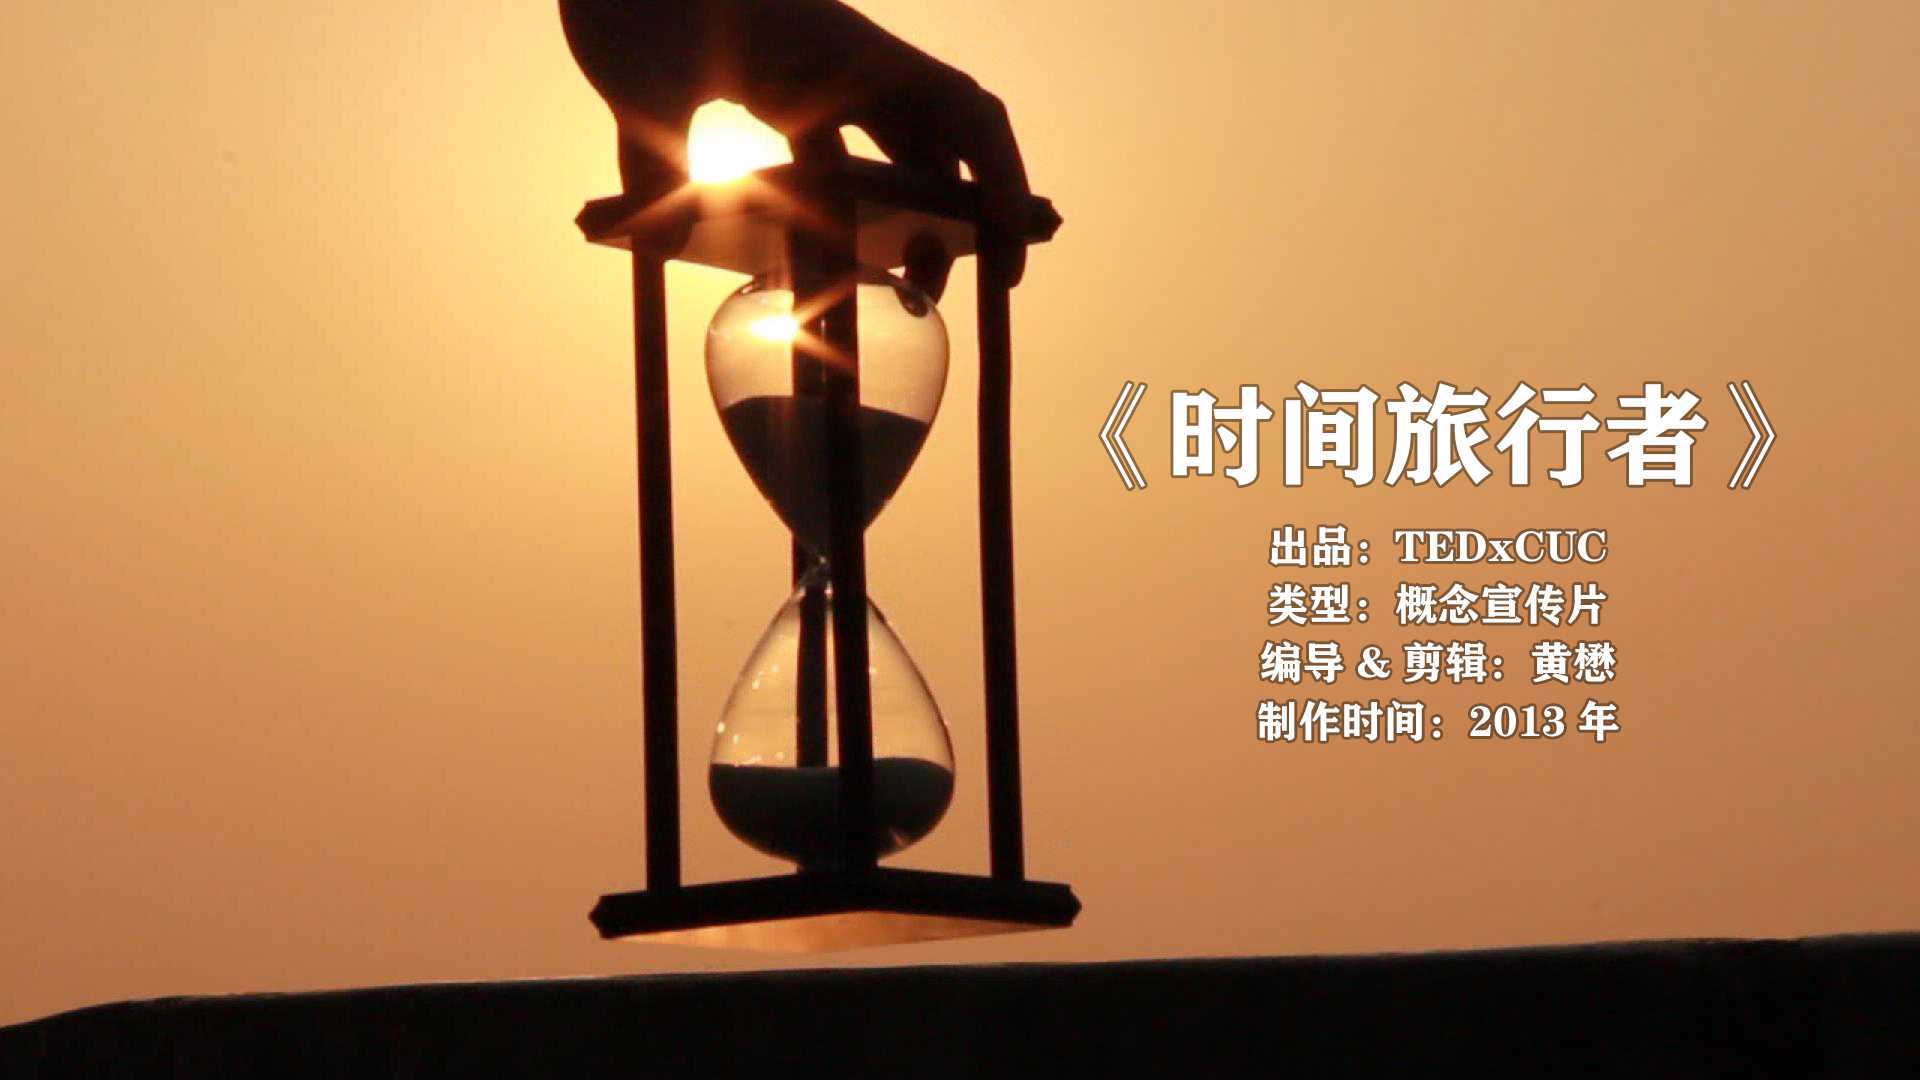 《时间旅行者》(2013) 概念宣传片 中国传媒大学TEDxCUC